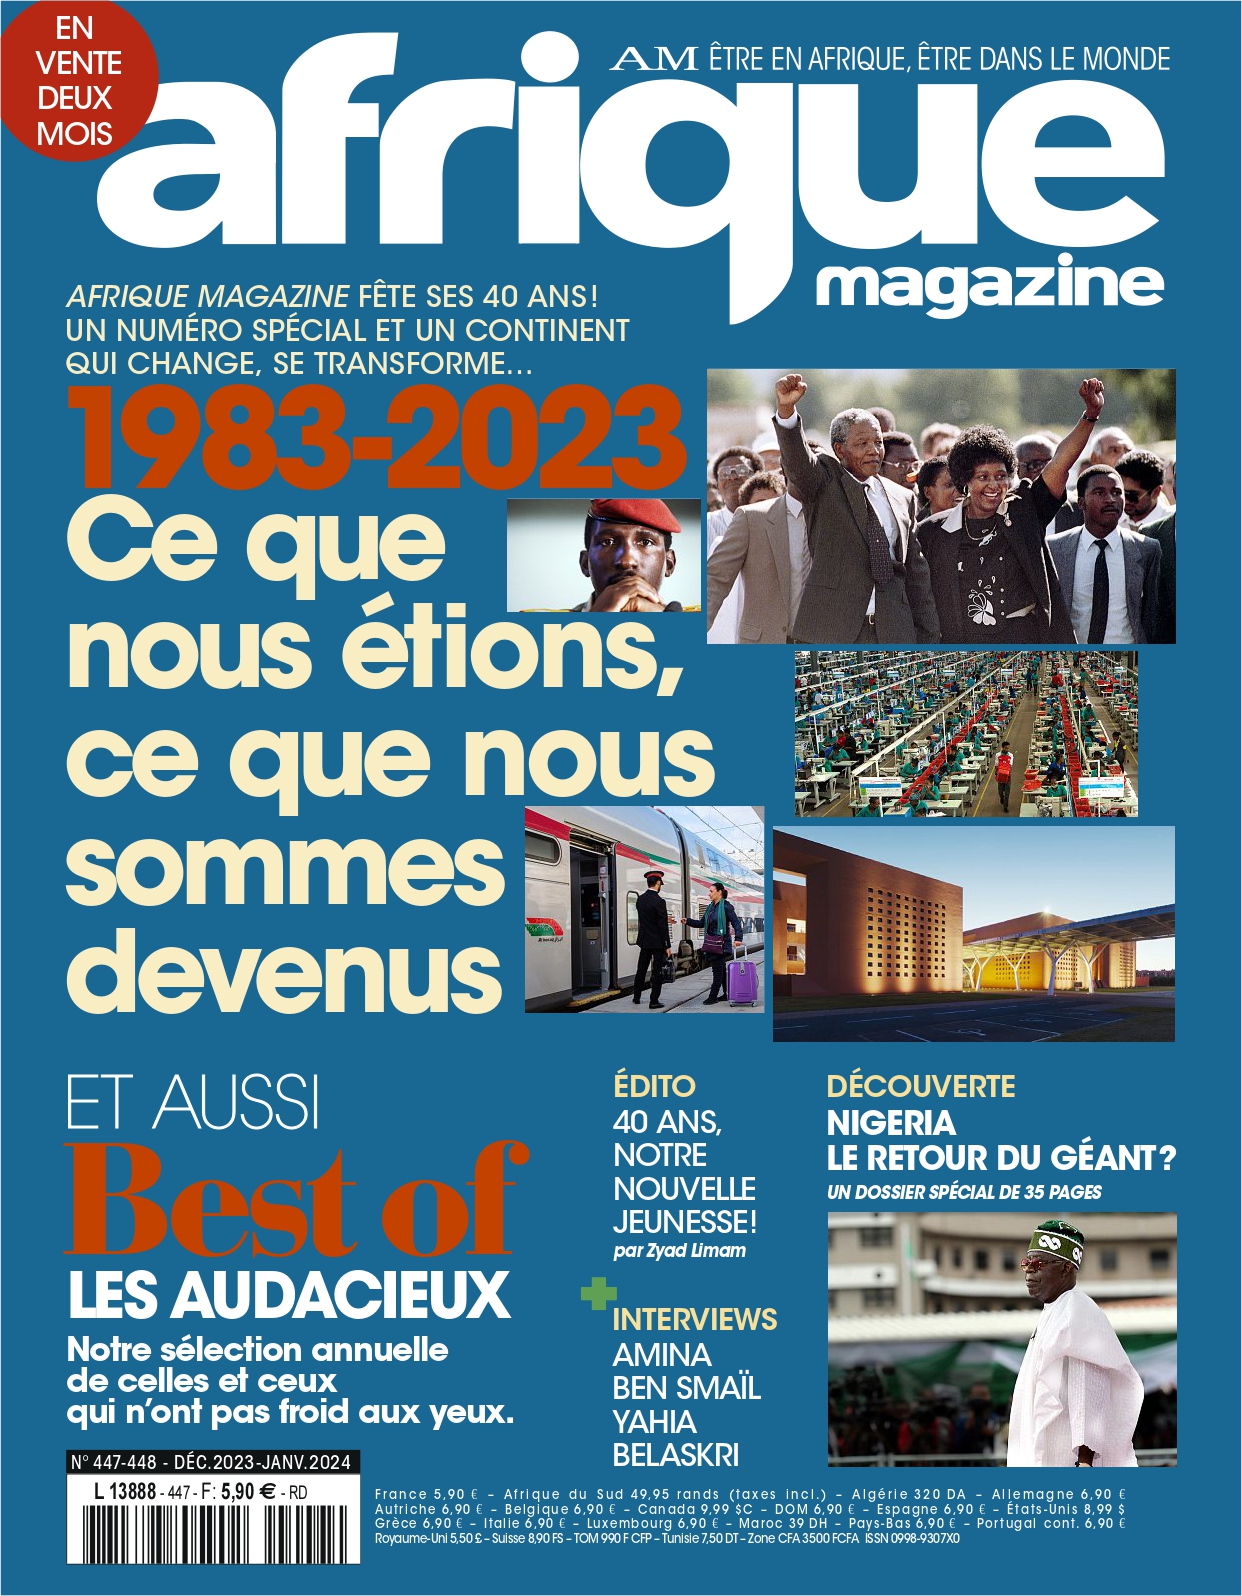 La culture africaine à Rabat - New African - le Magazine de L'Afrique